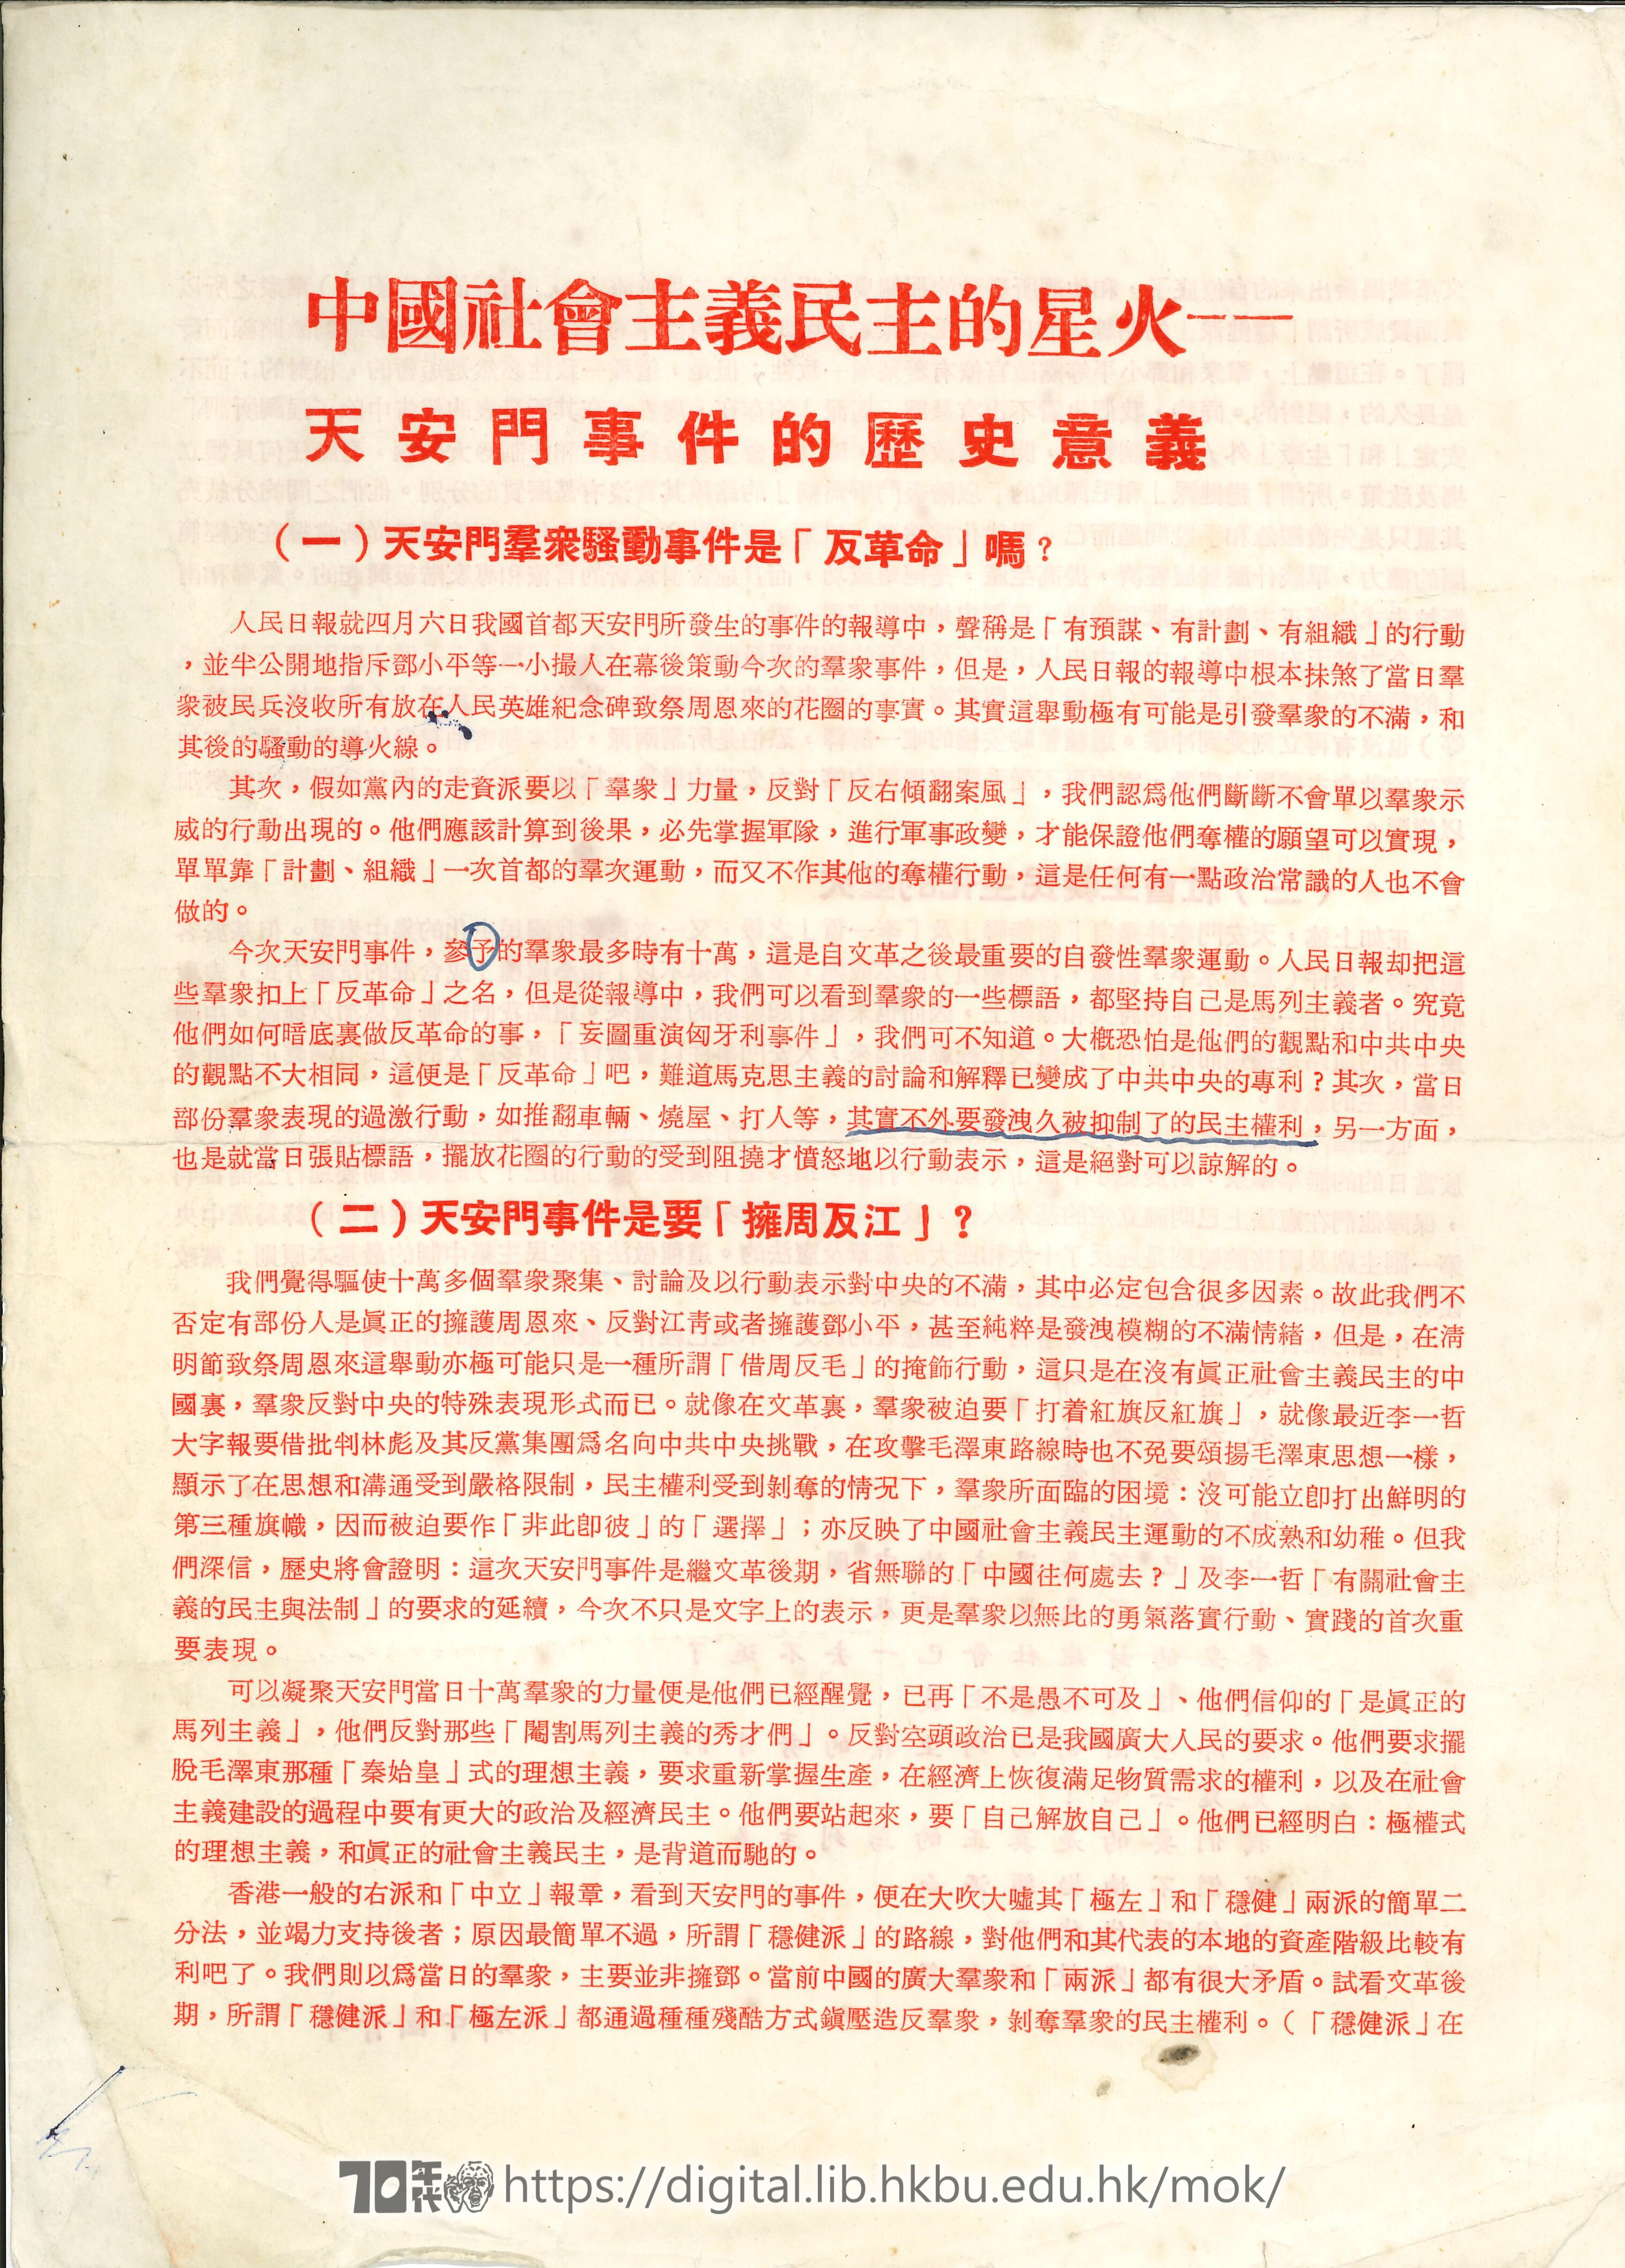   中國社會主義民主的星火——天安門事件的歷史意義 一群中國青年 